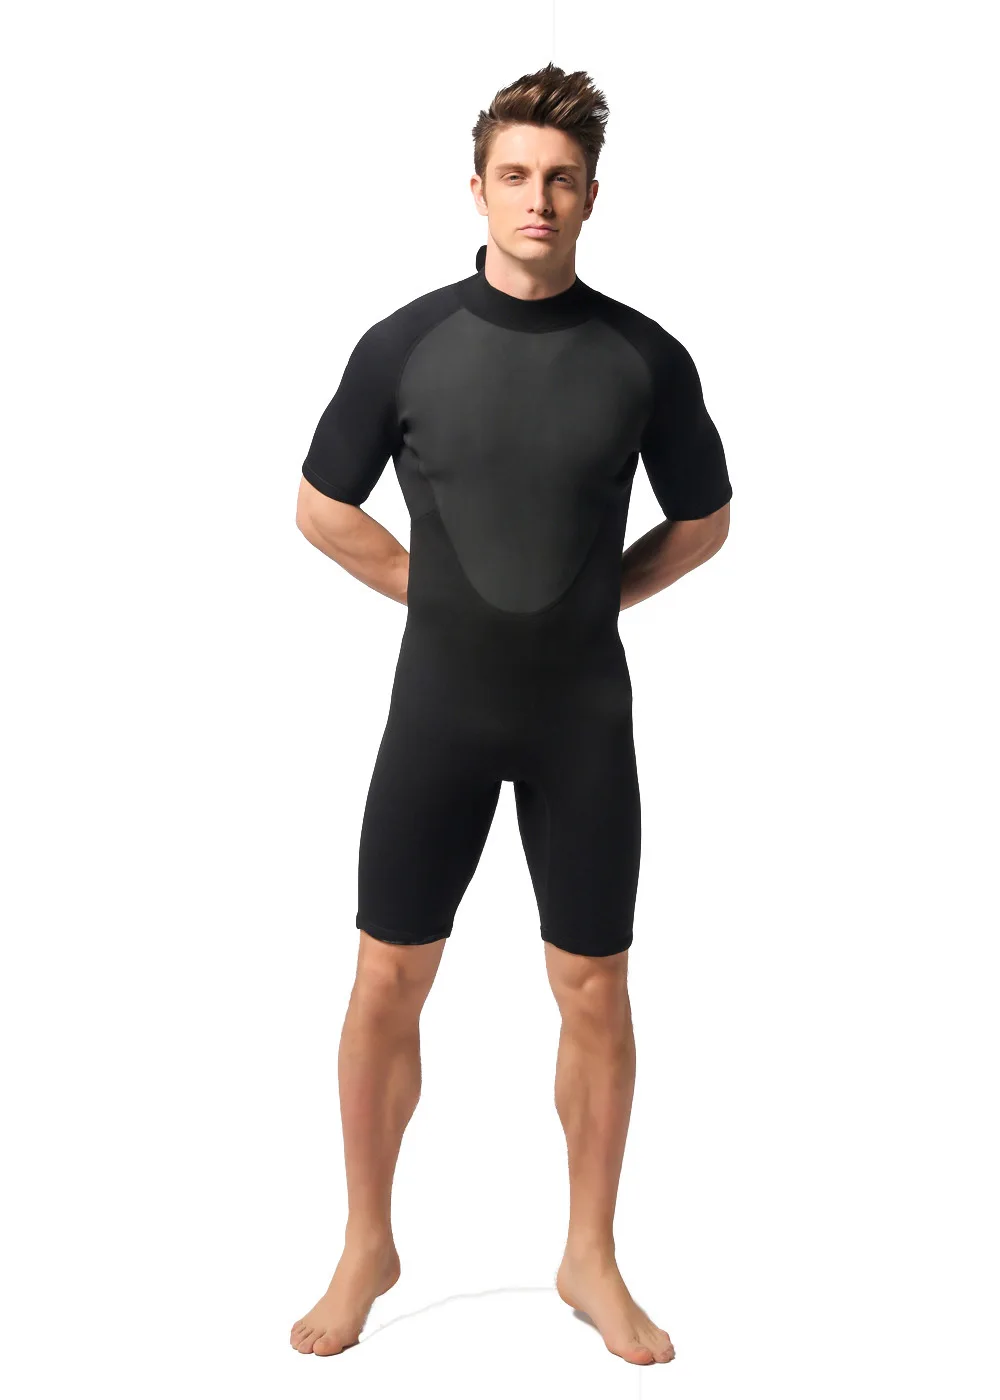 3 мм неопрена Для Мужчин's Гидрокостюмы мокрого типа Утепленная одежда Водонепроницаемый всего тела короткий рукав Подводное серфинг дайвинг гидрокостюм для дайвинга костюмы